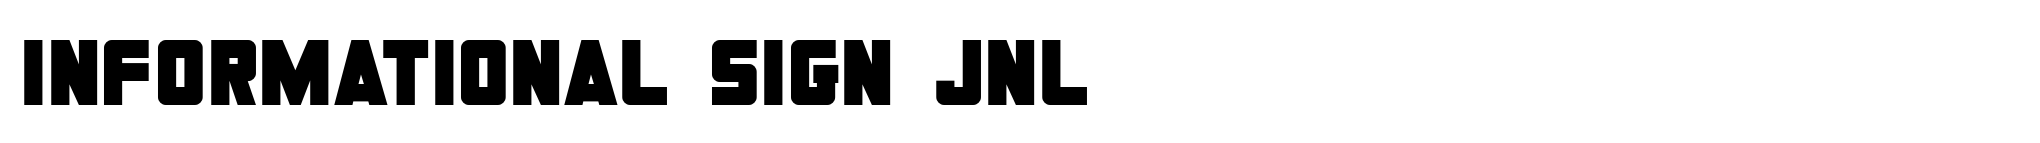 Informational Sign JNL image